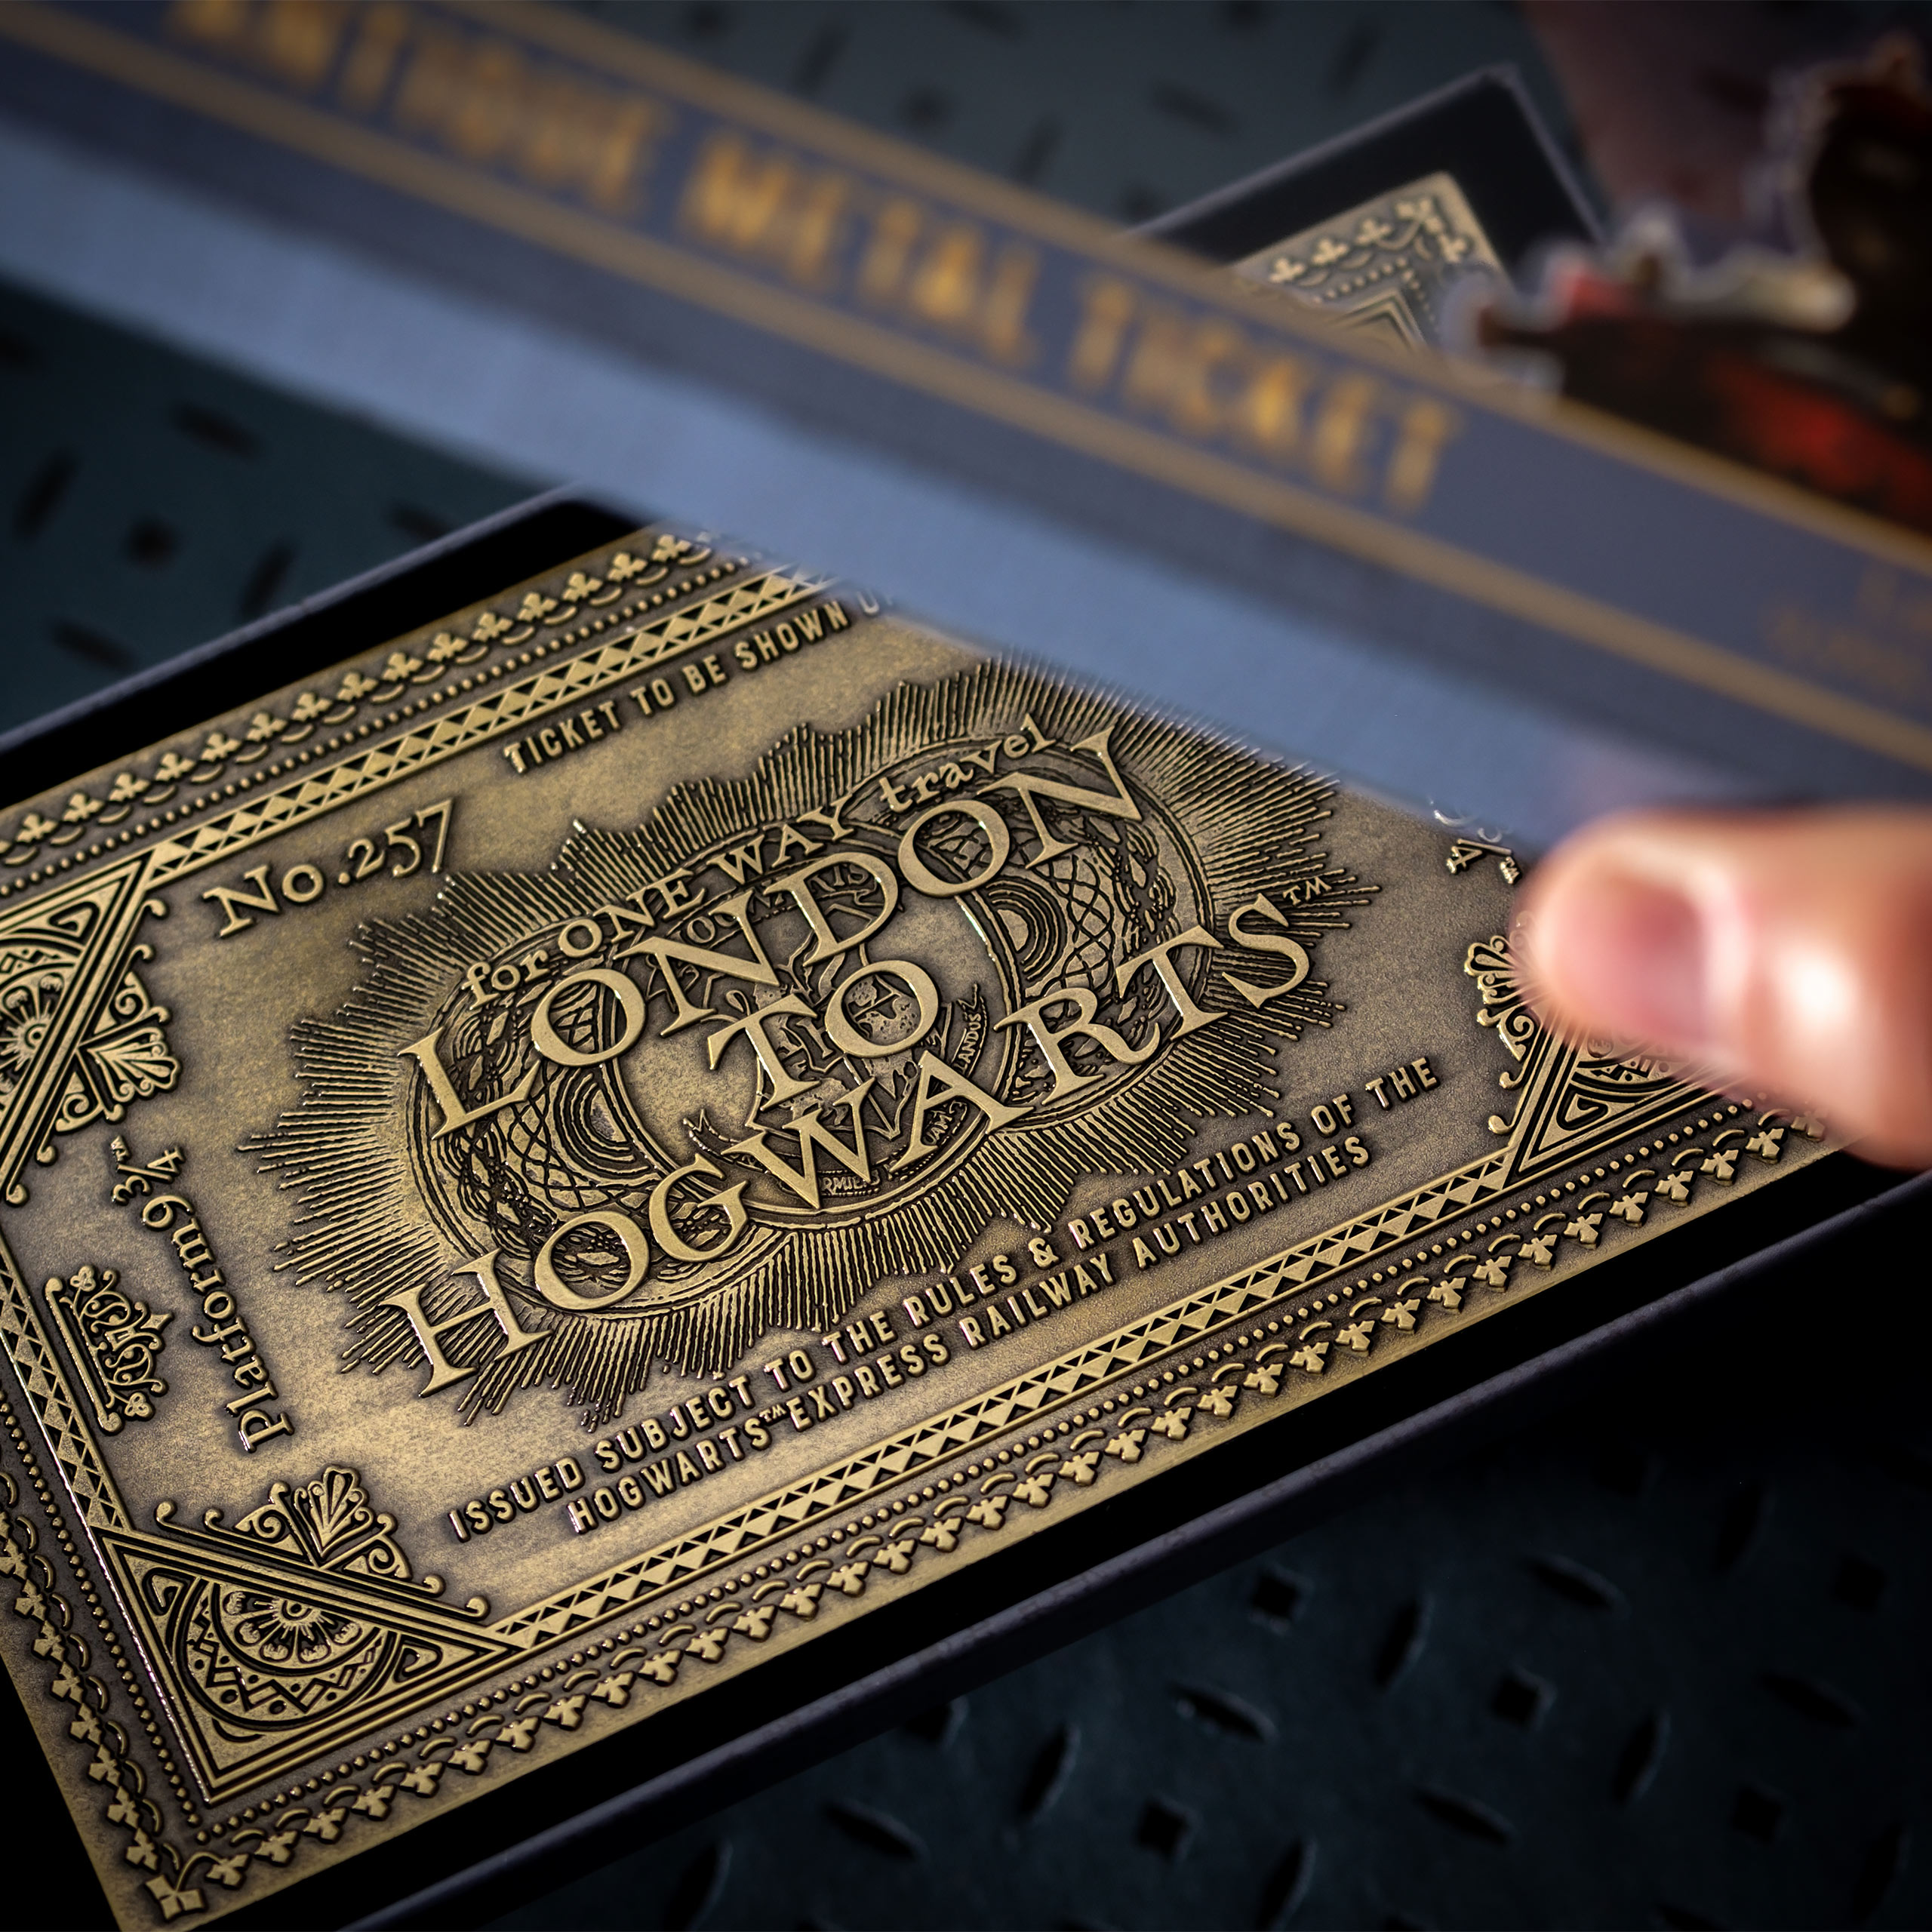 Harry Potter - Hogwarts Express Antik Ticket Replik limitiert